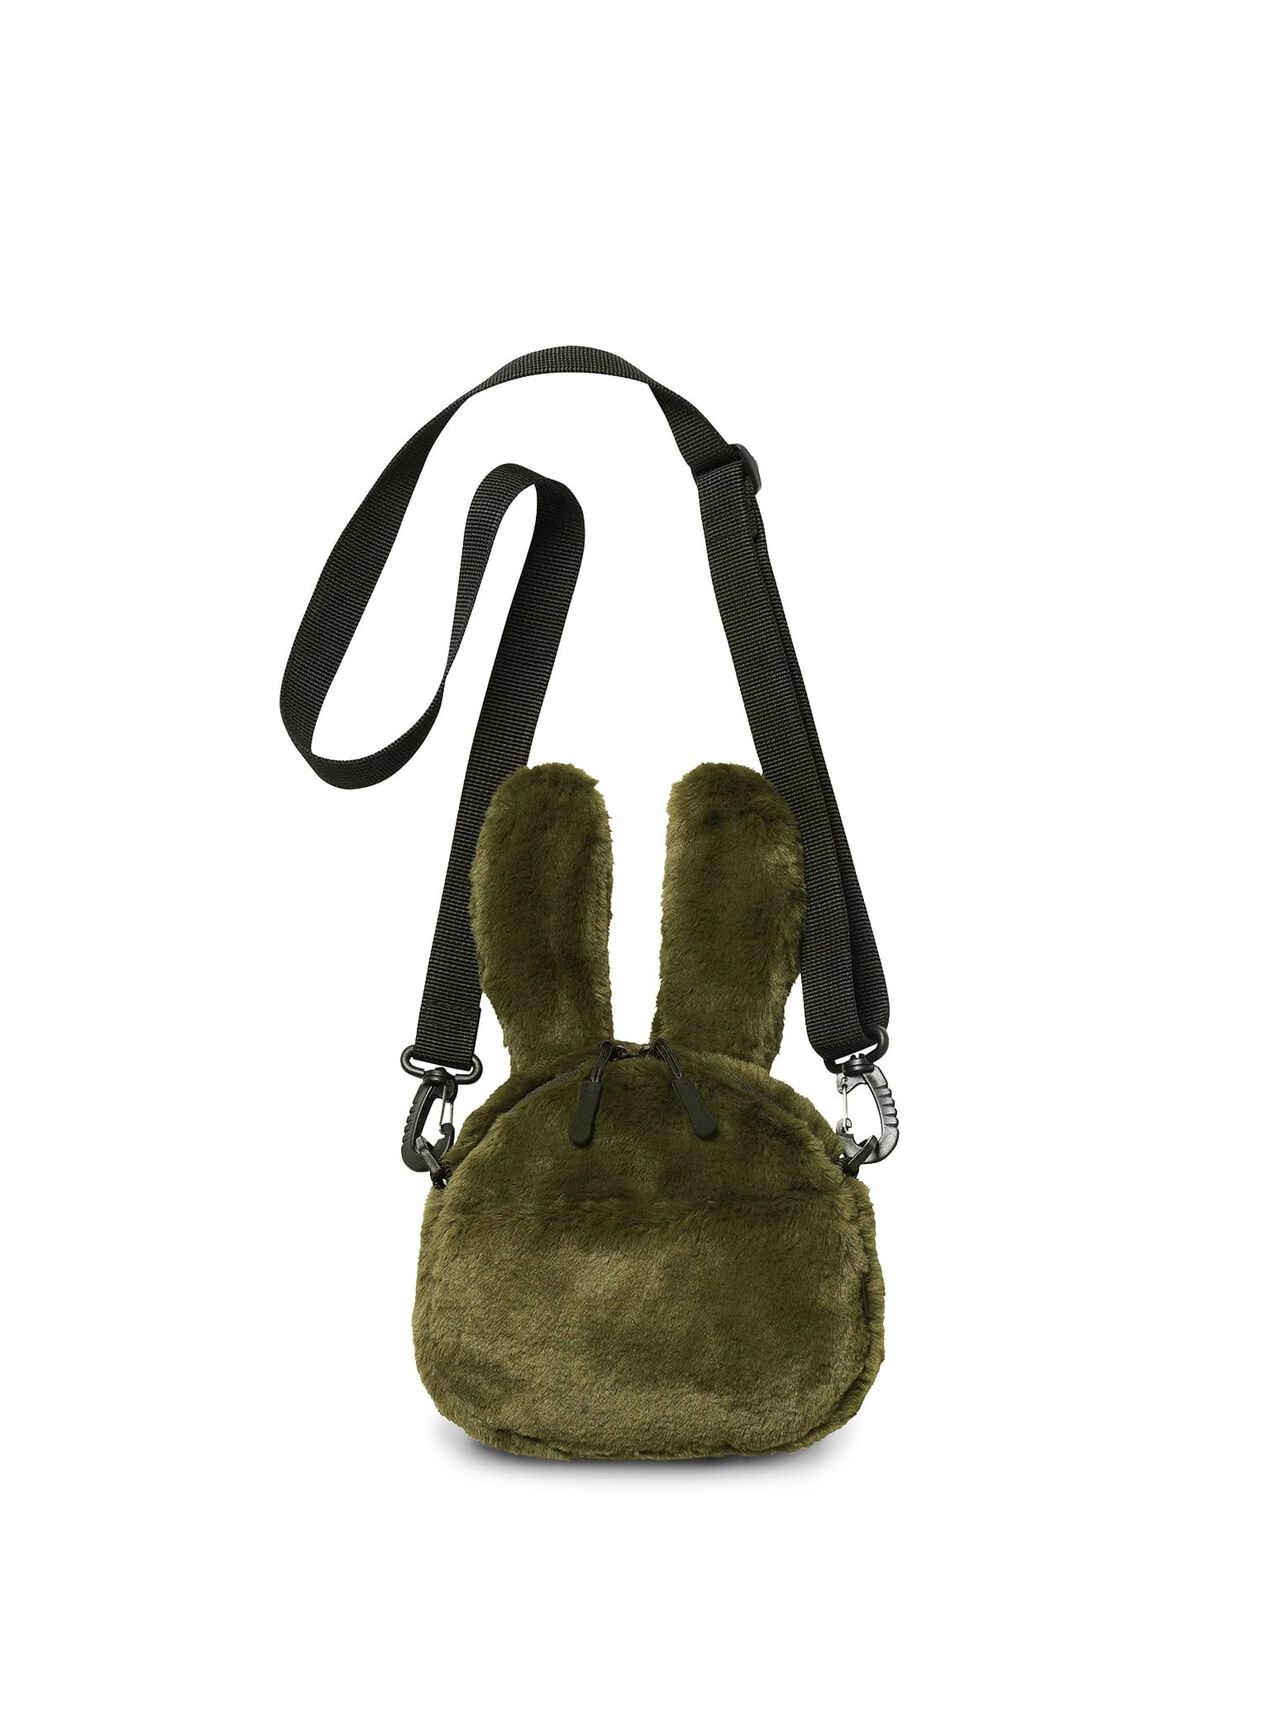 Fluffy Rabbit Shoulder Bag Small,ONE, large image number 4